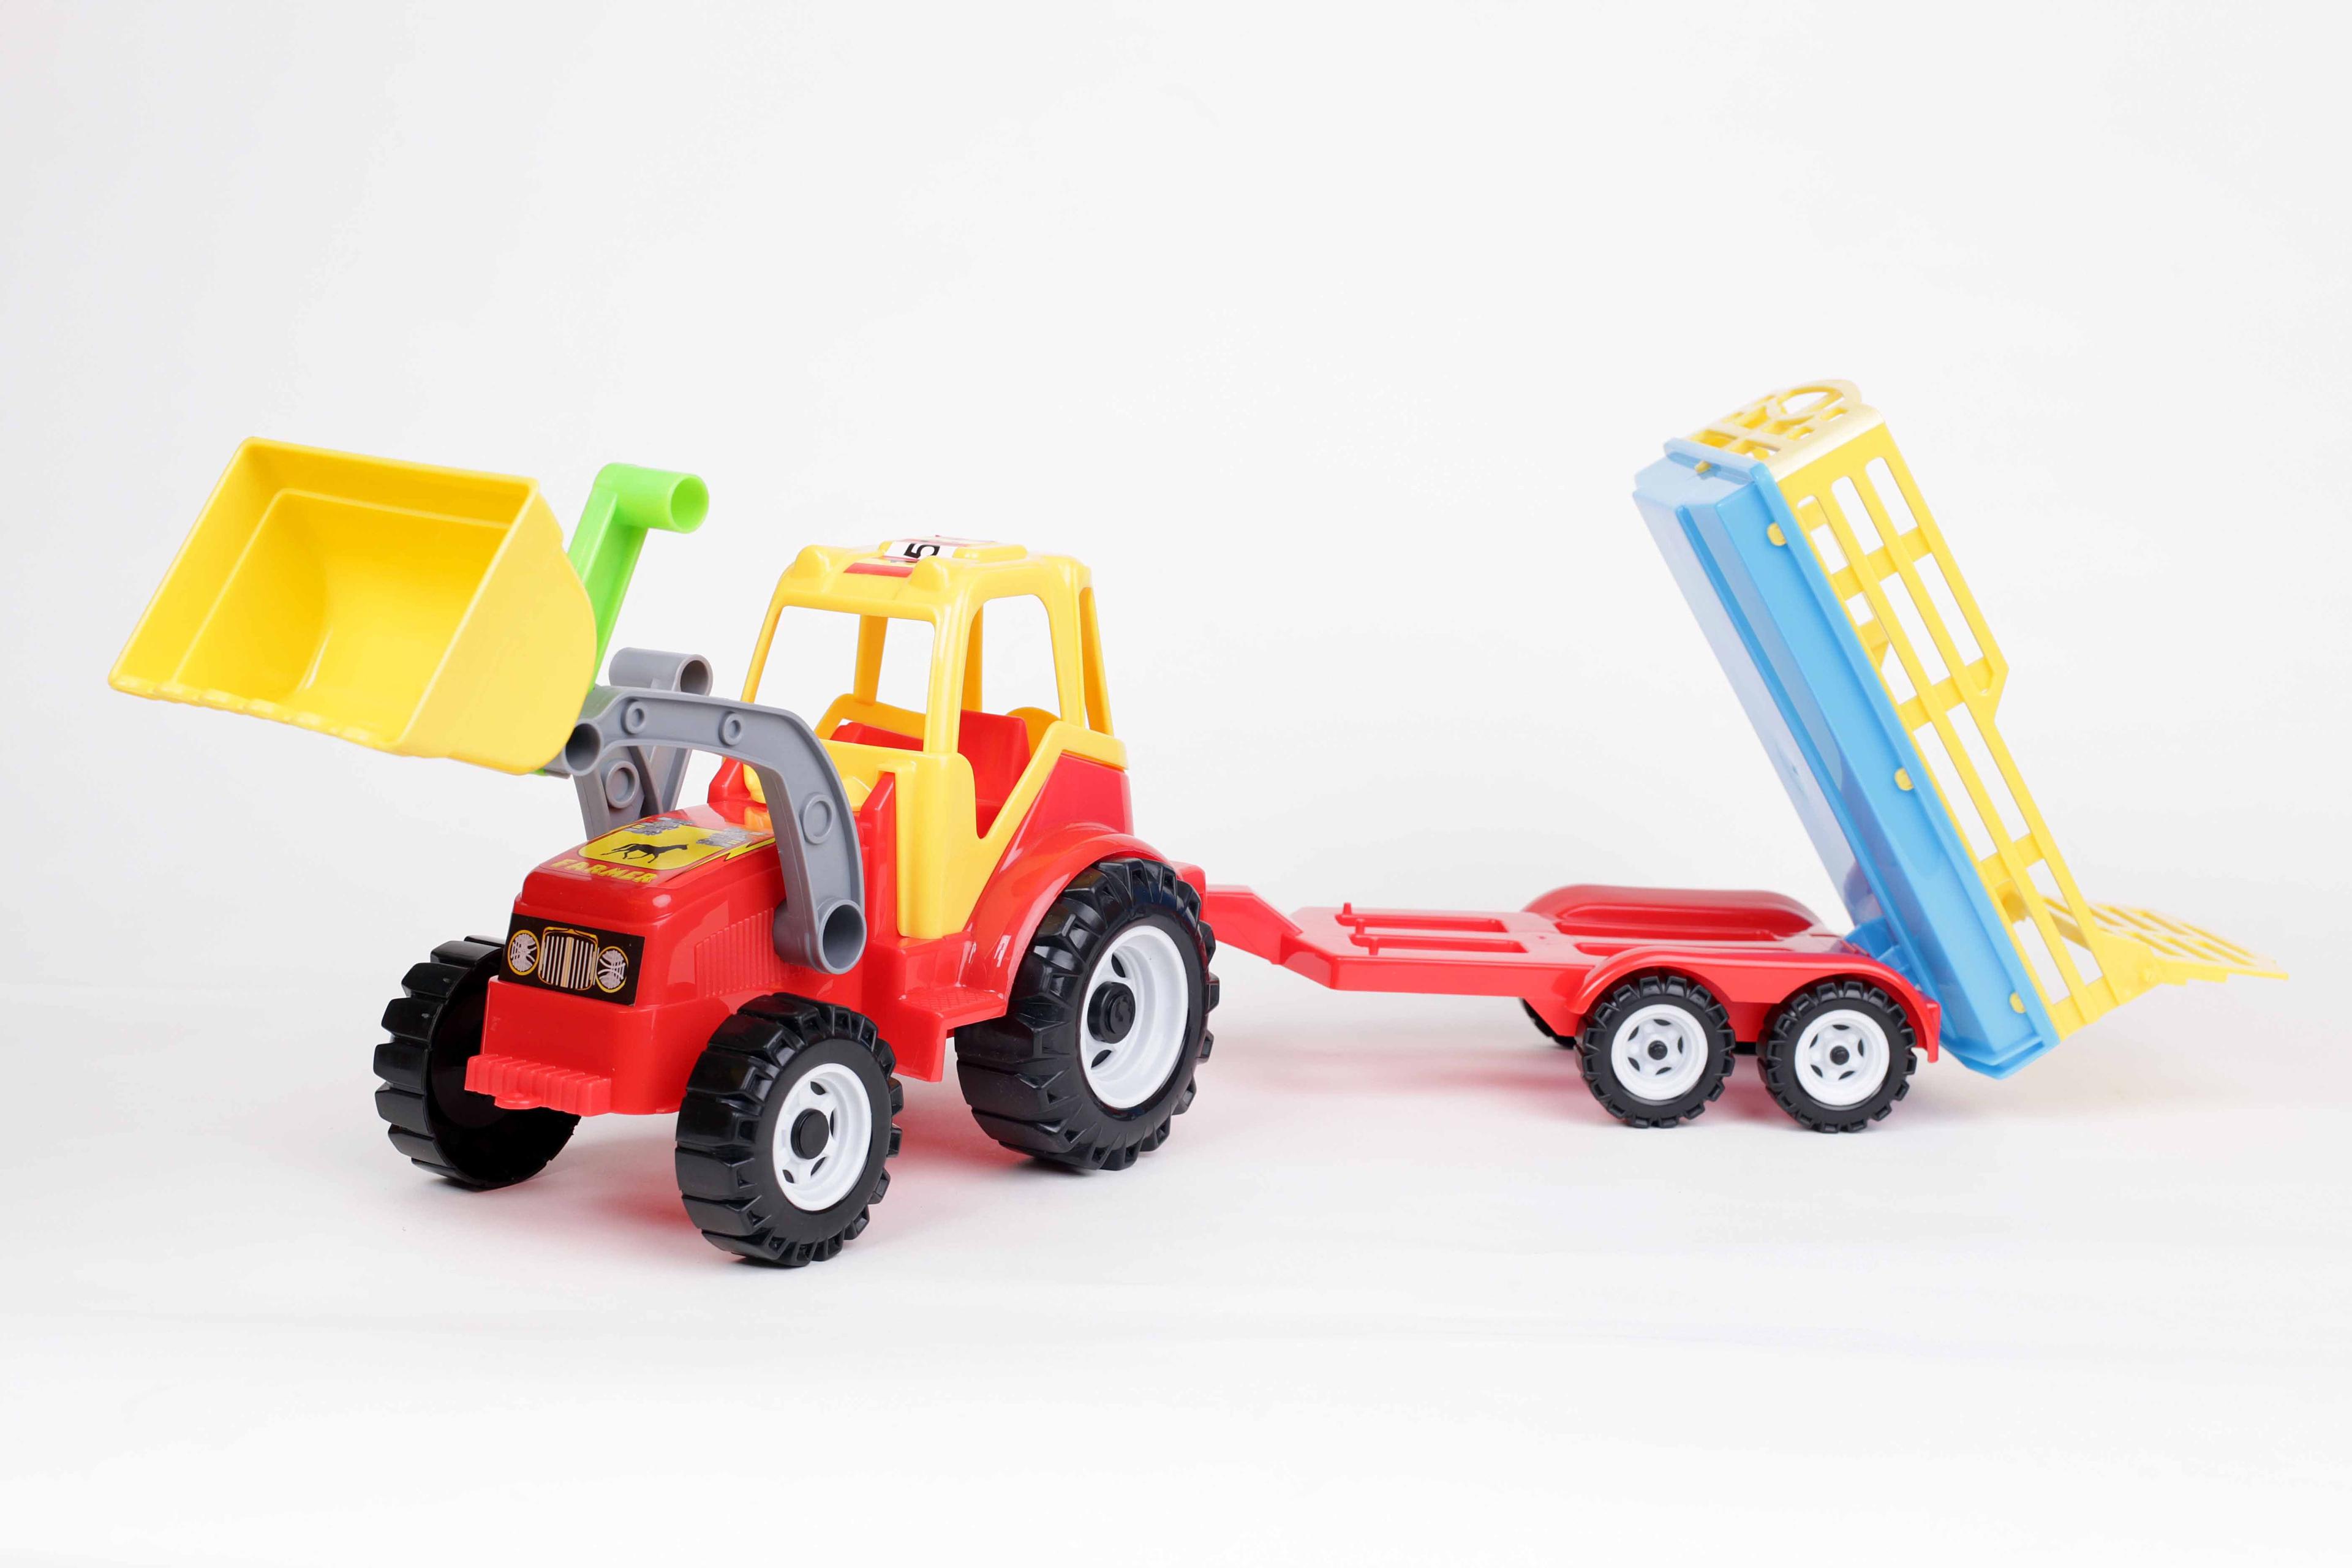 Traktor z ładowarką i przyczepą – model 084